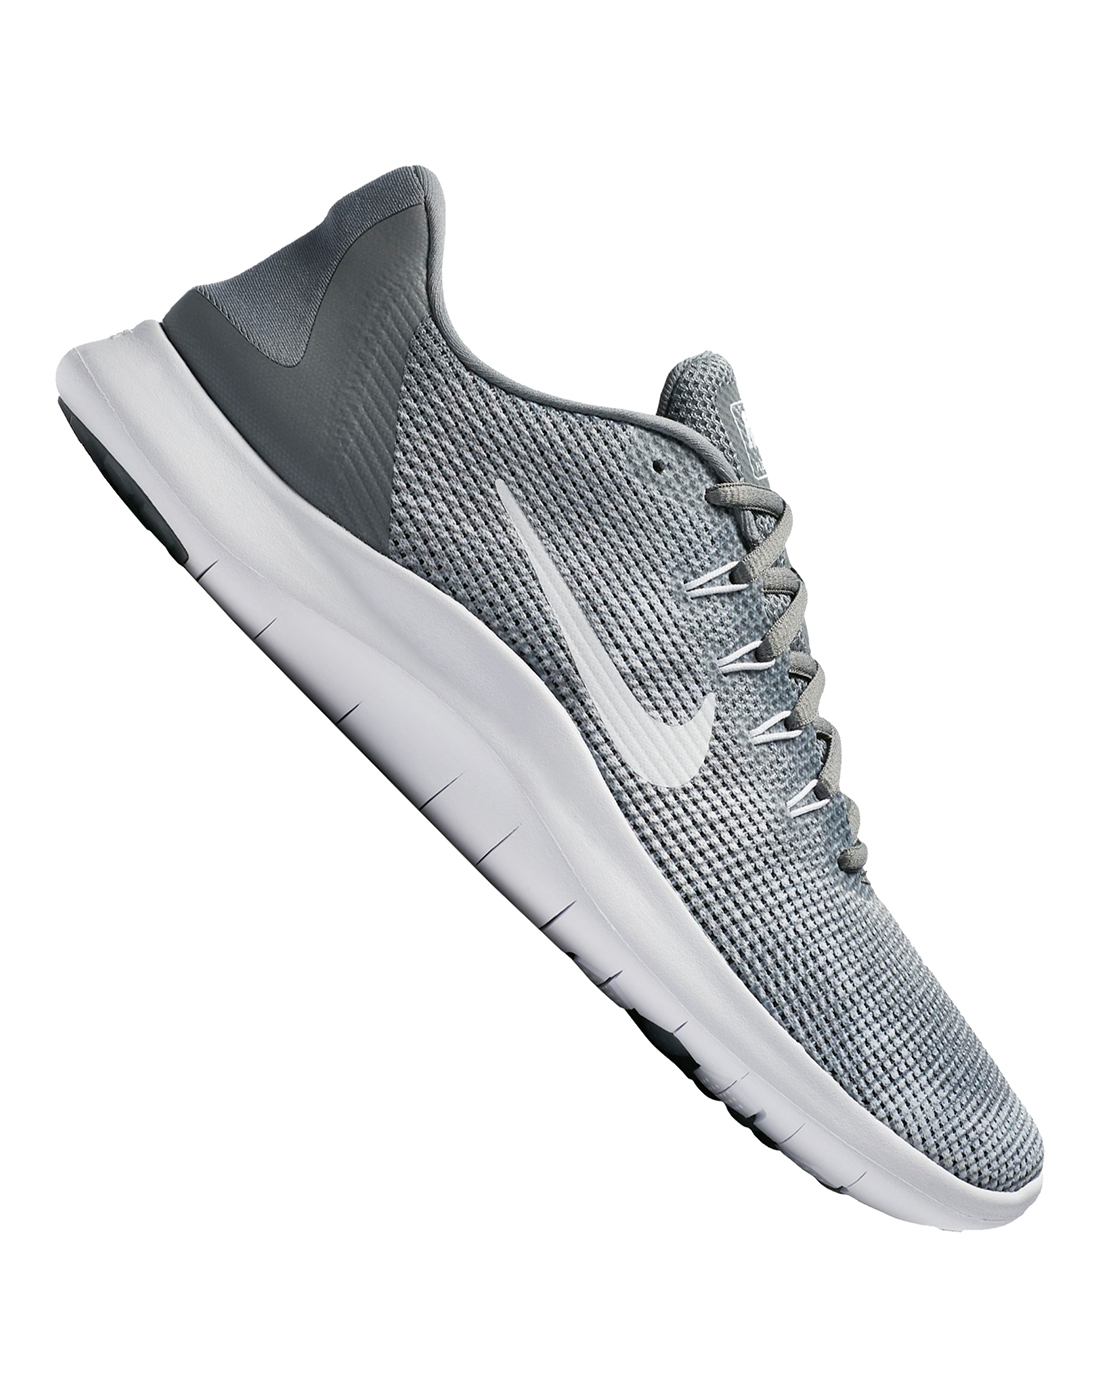 Nike Mens Flex Run 2018 - Grey Style IE